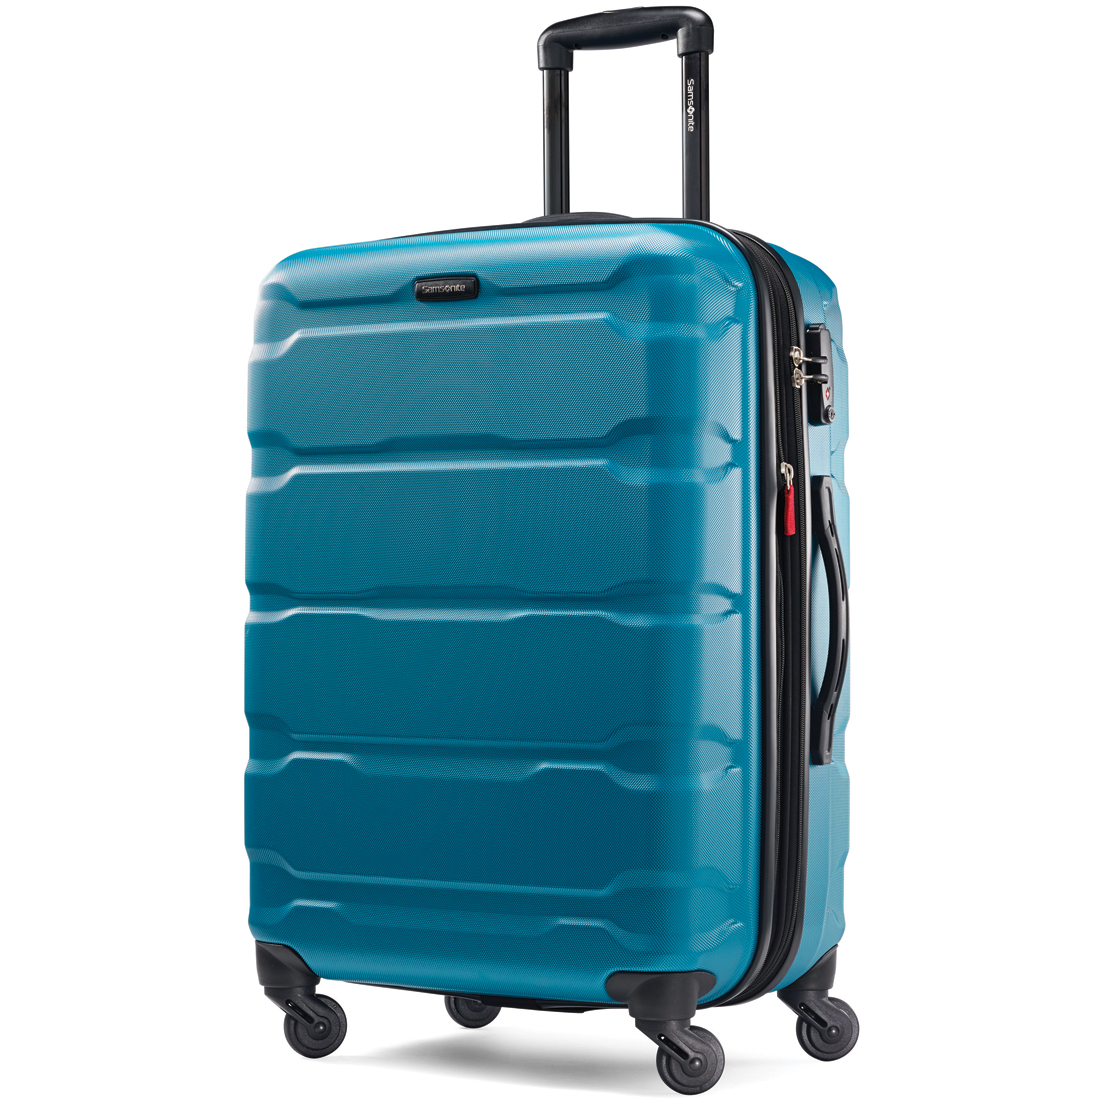 Samsonite Omni 24 Inch Hardside Spinner Luggage Suitcase - Choose Color ...